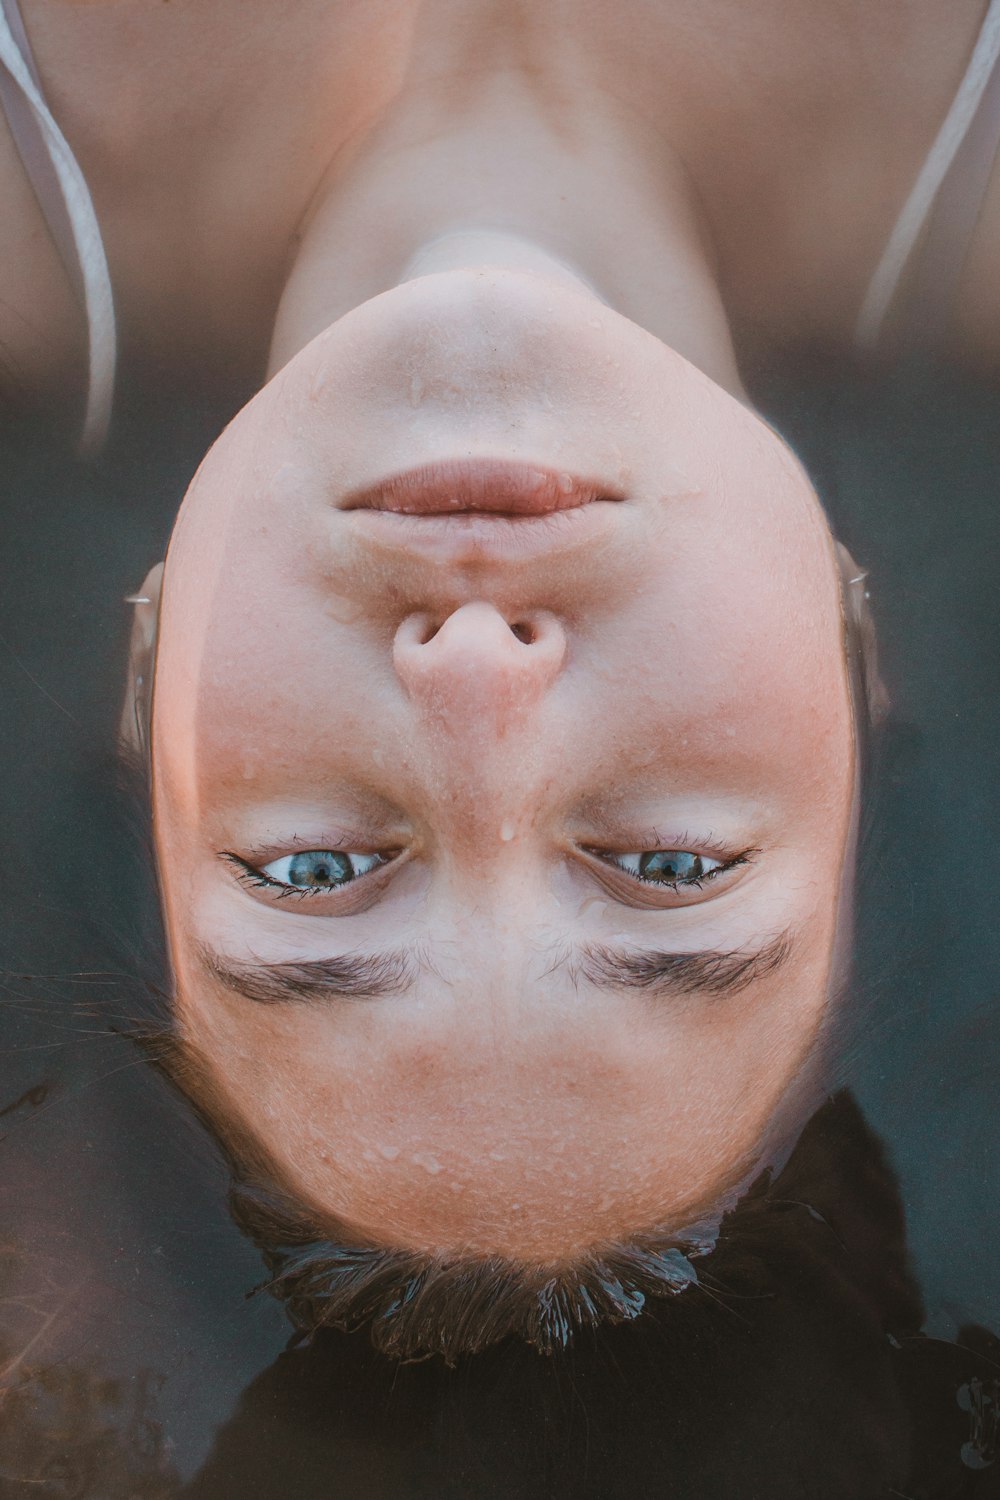 donna sdraiata sullo specchio d'acqua in primo piano fotografia